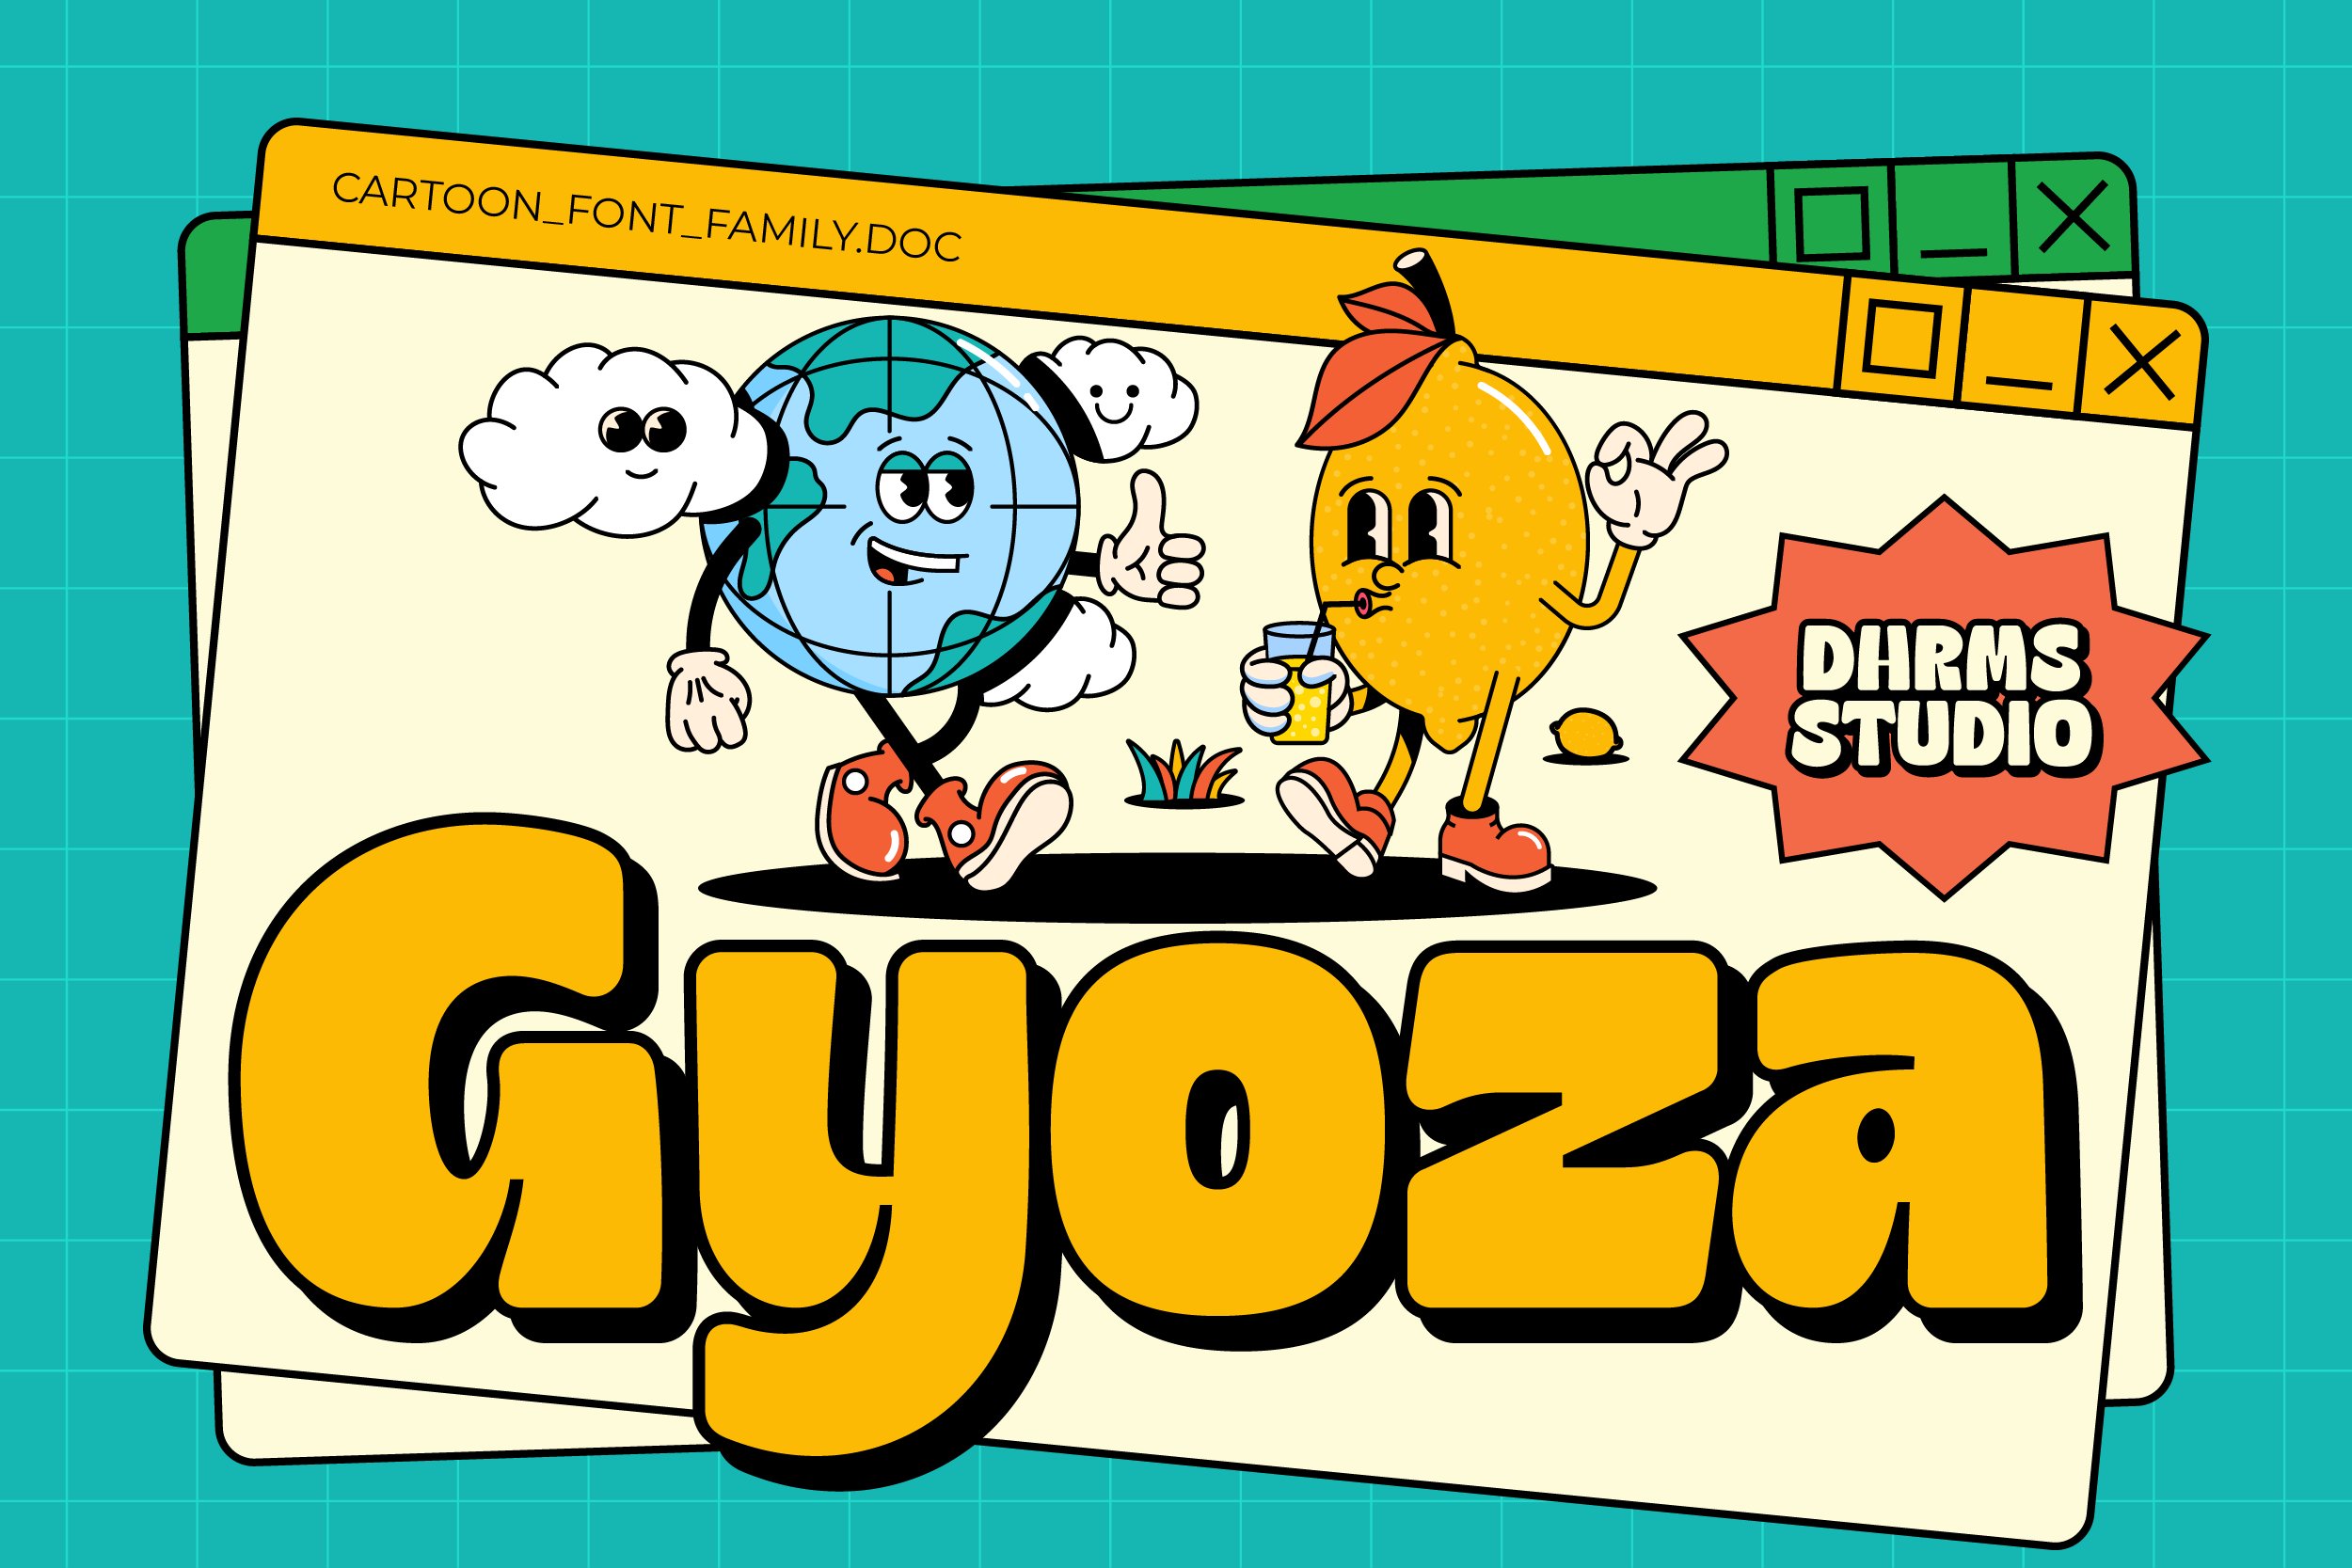 Gyoza - Cartoon Font Family cover image.